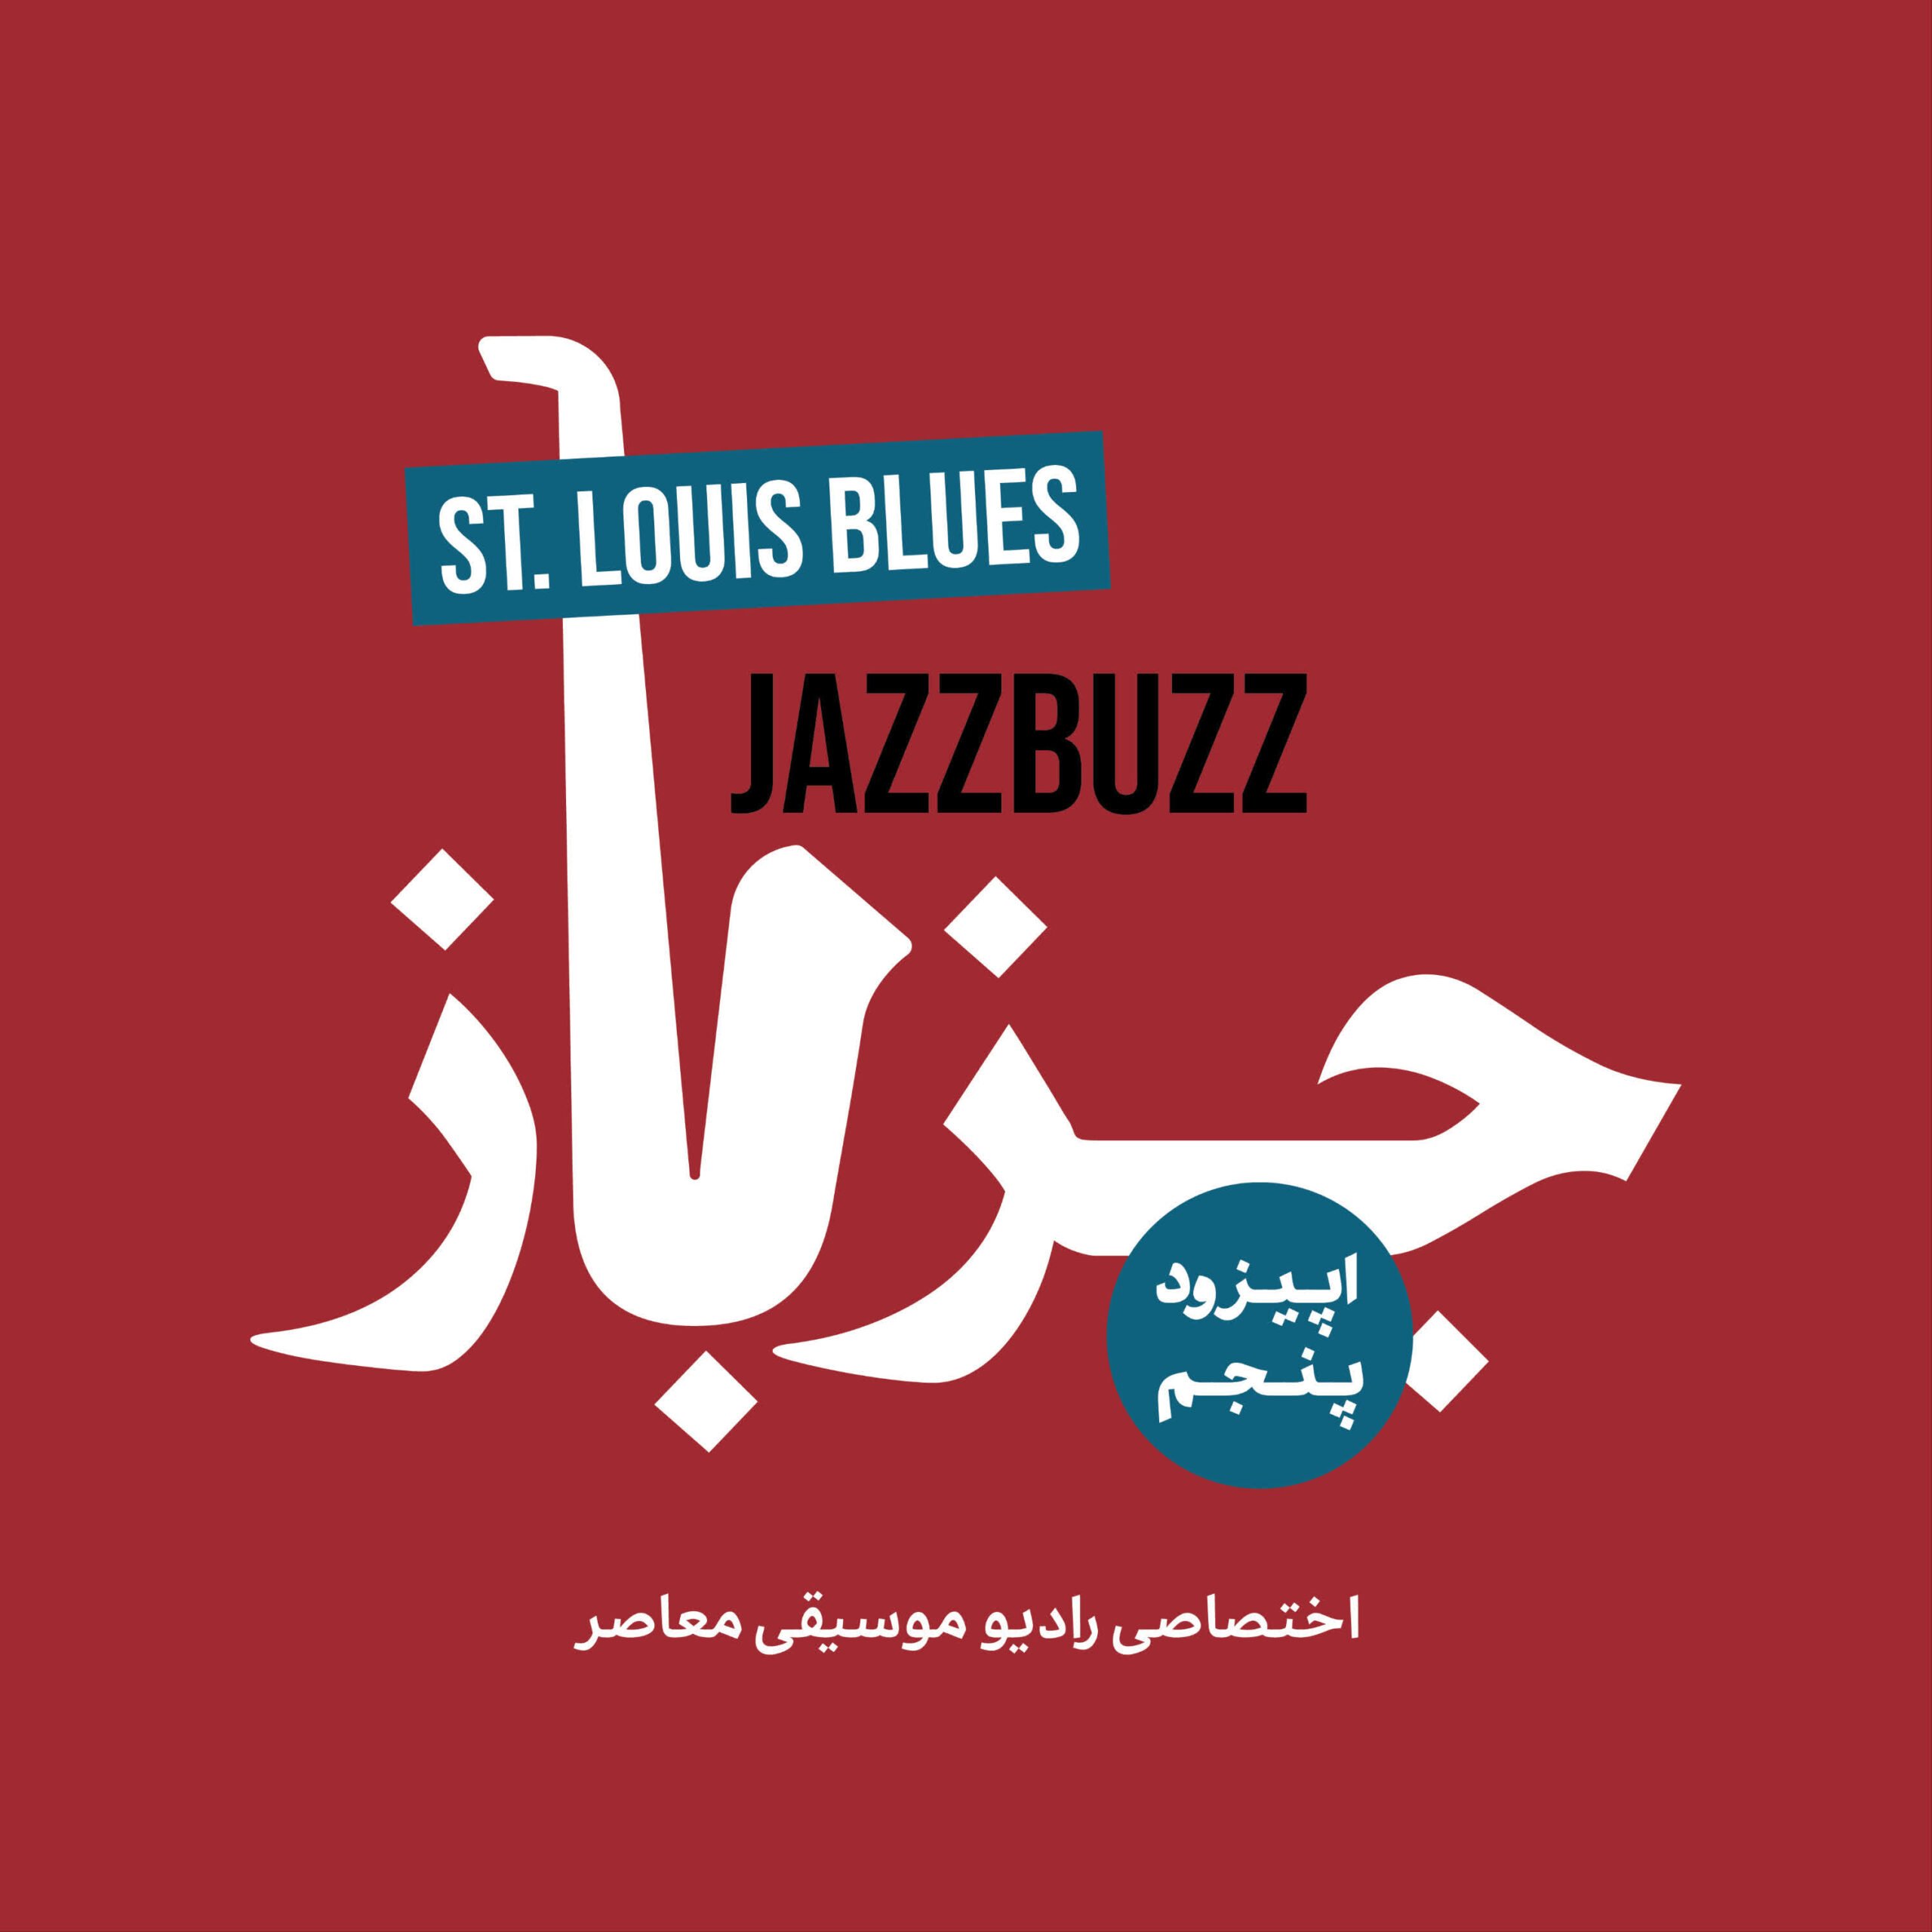 JazzBuzz 05: St. Louis Blues